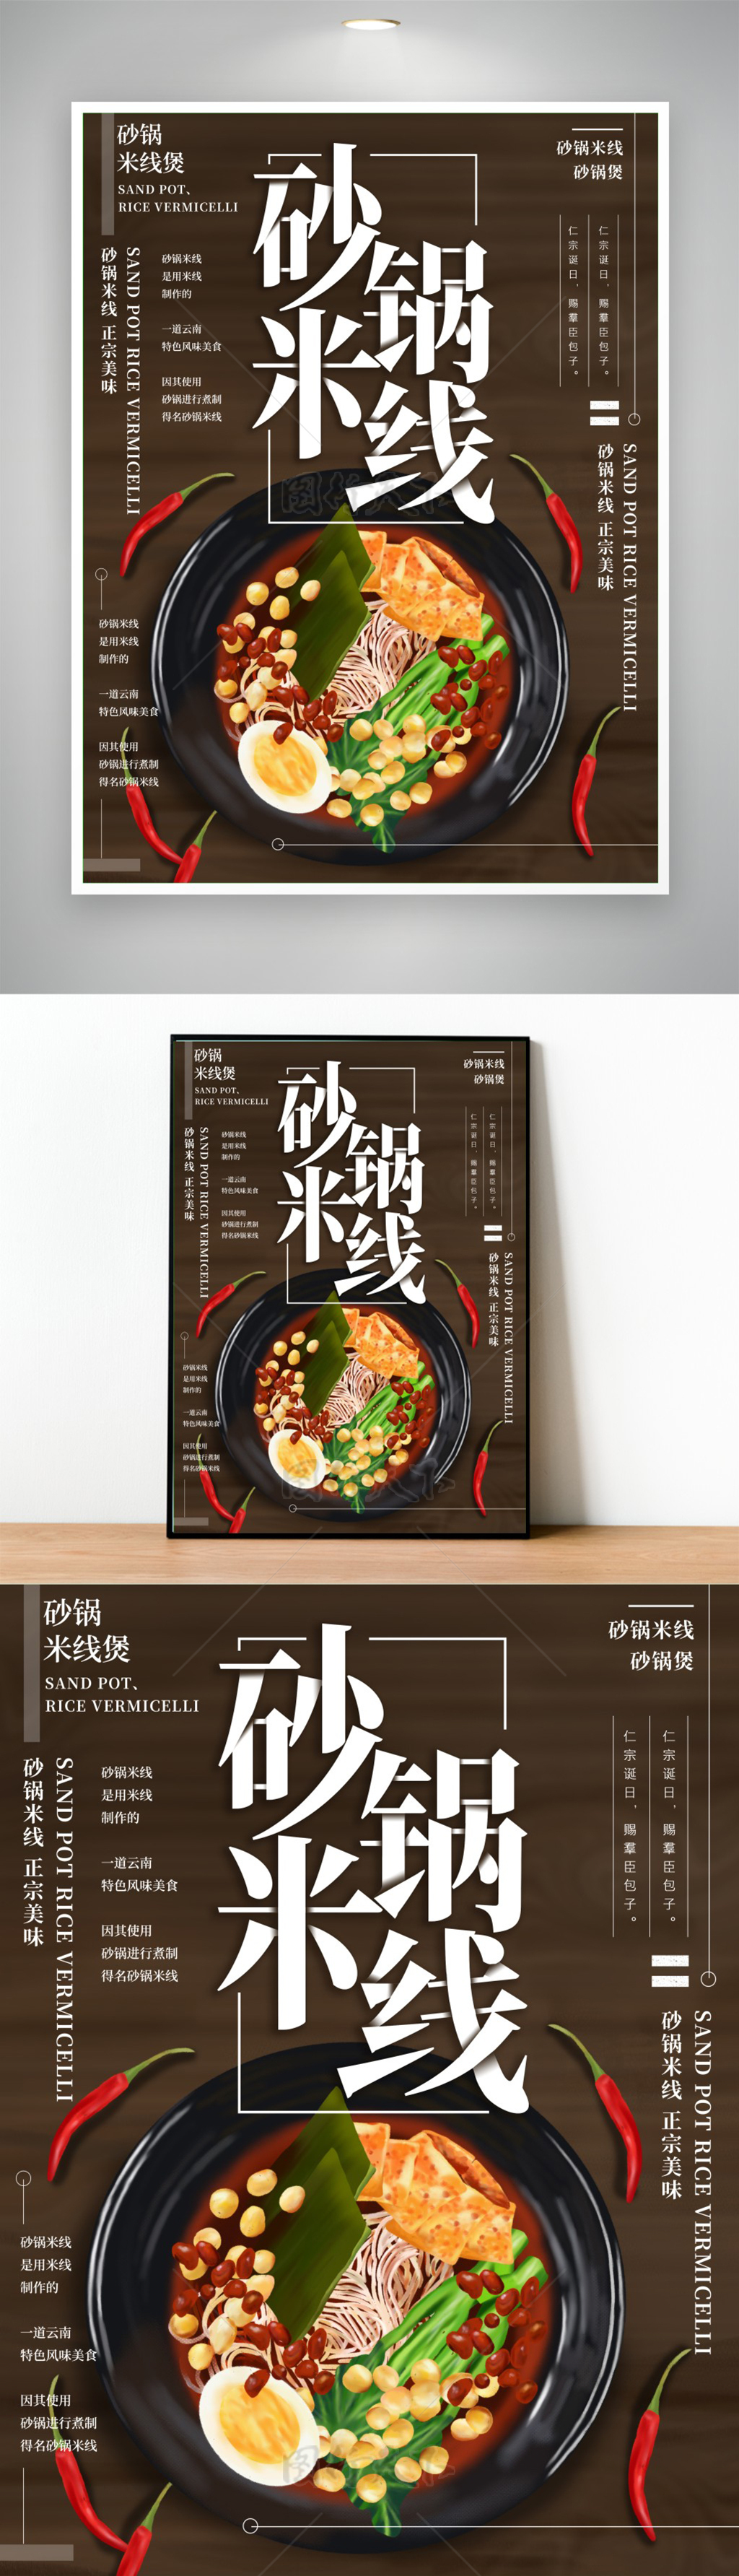 原创插画砂锅米线美食海报